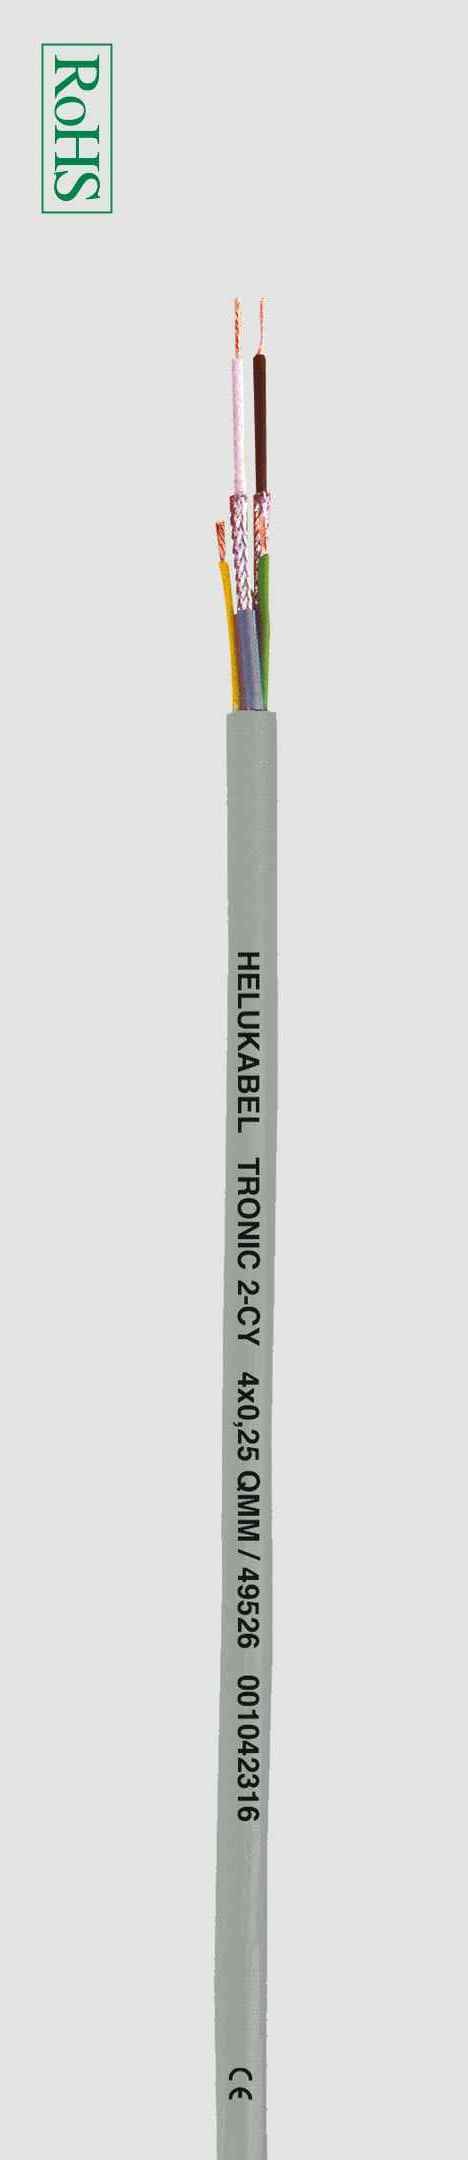 Кабель для передачи данных HELUKABEL TRONIC 2-CY